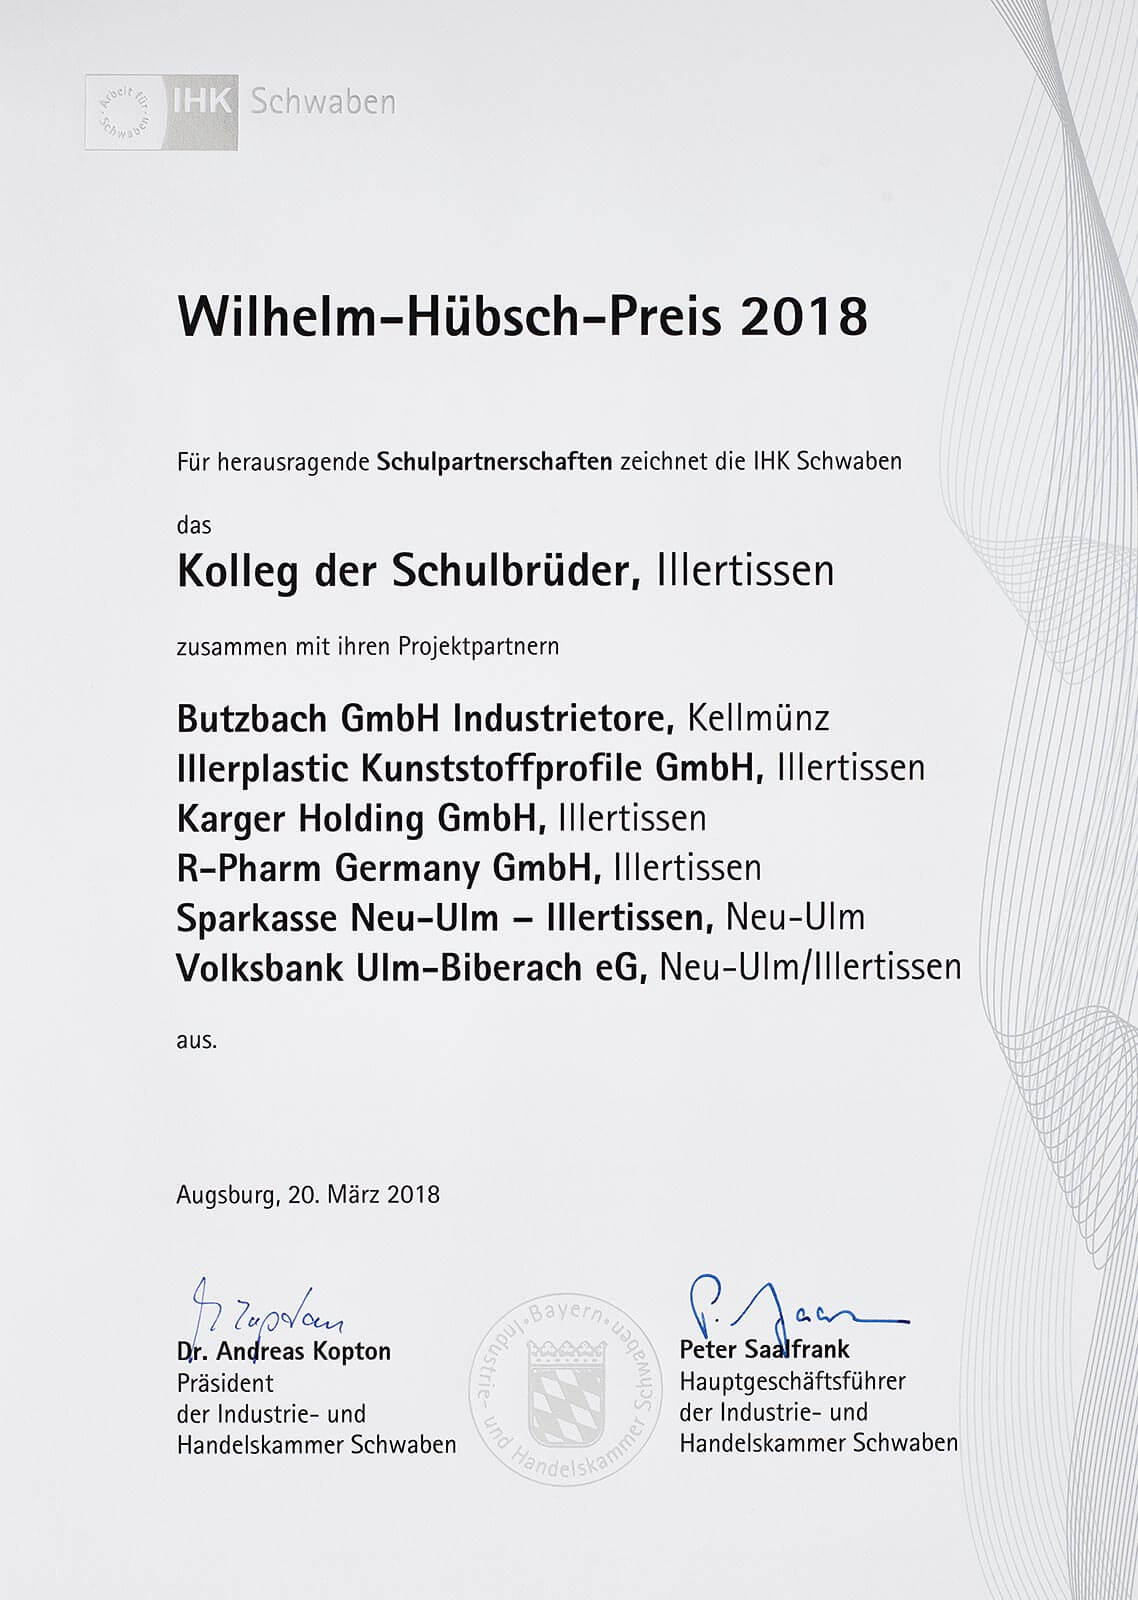 WILHELM-HÜBSCH-PREIS 2018